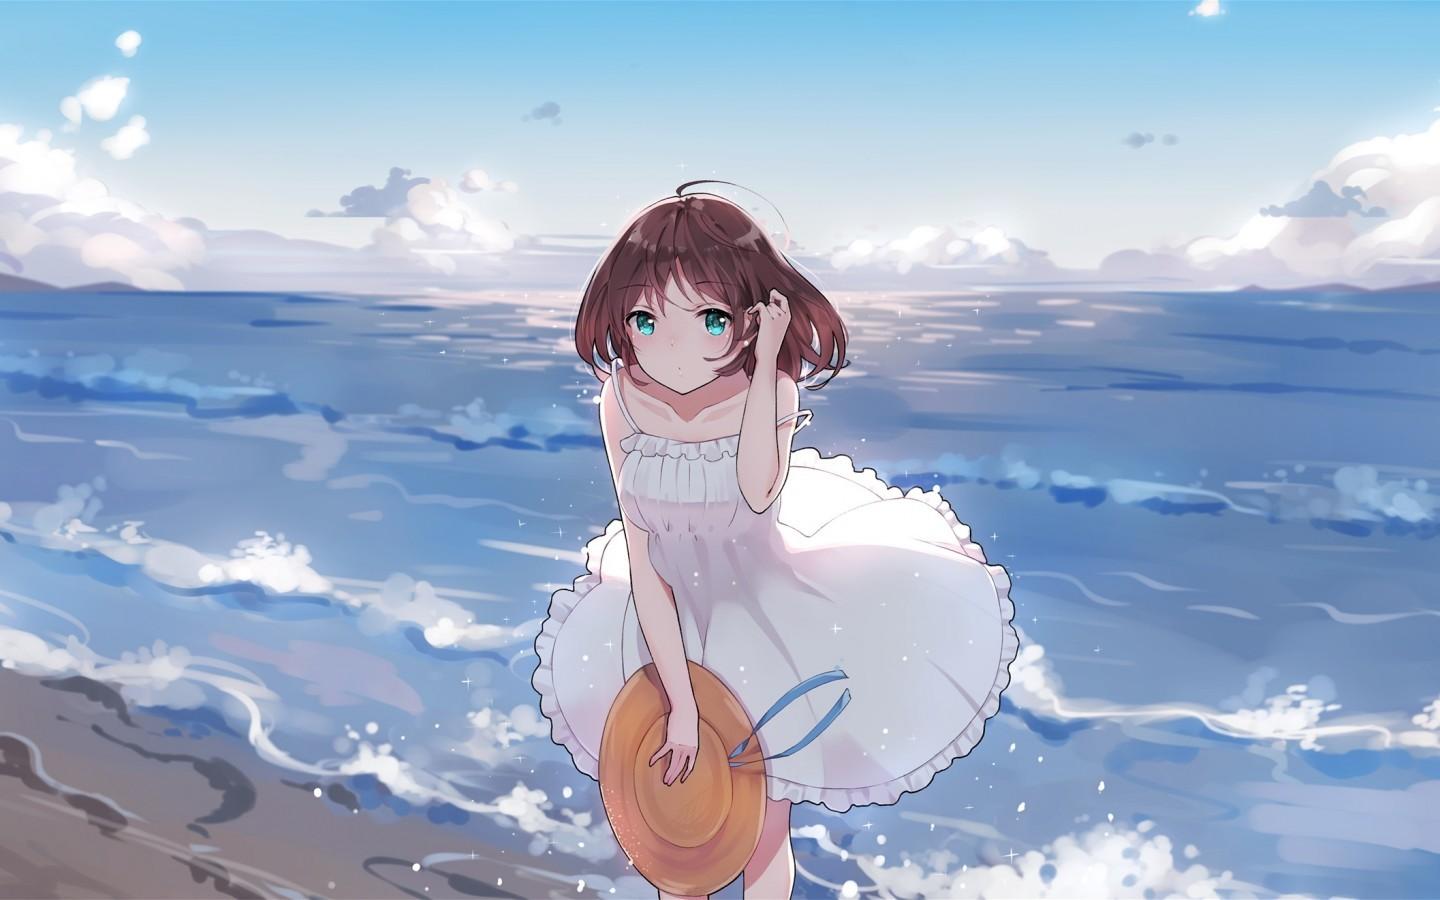 Download 1440x900 Summer Dress, Anime Girl, Ocean, Waves, Beach